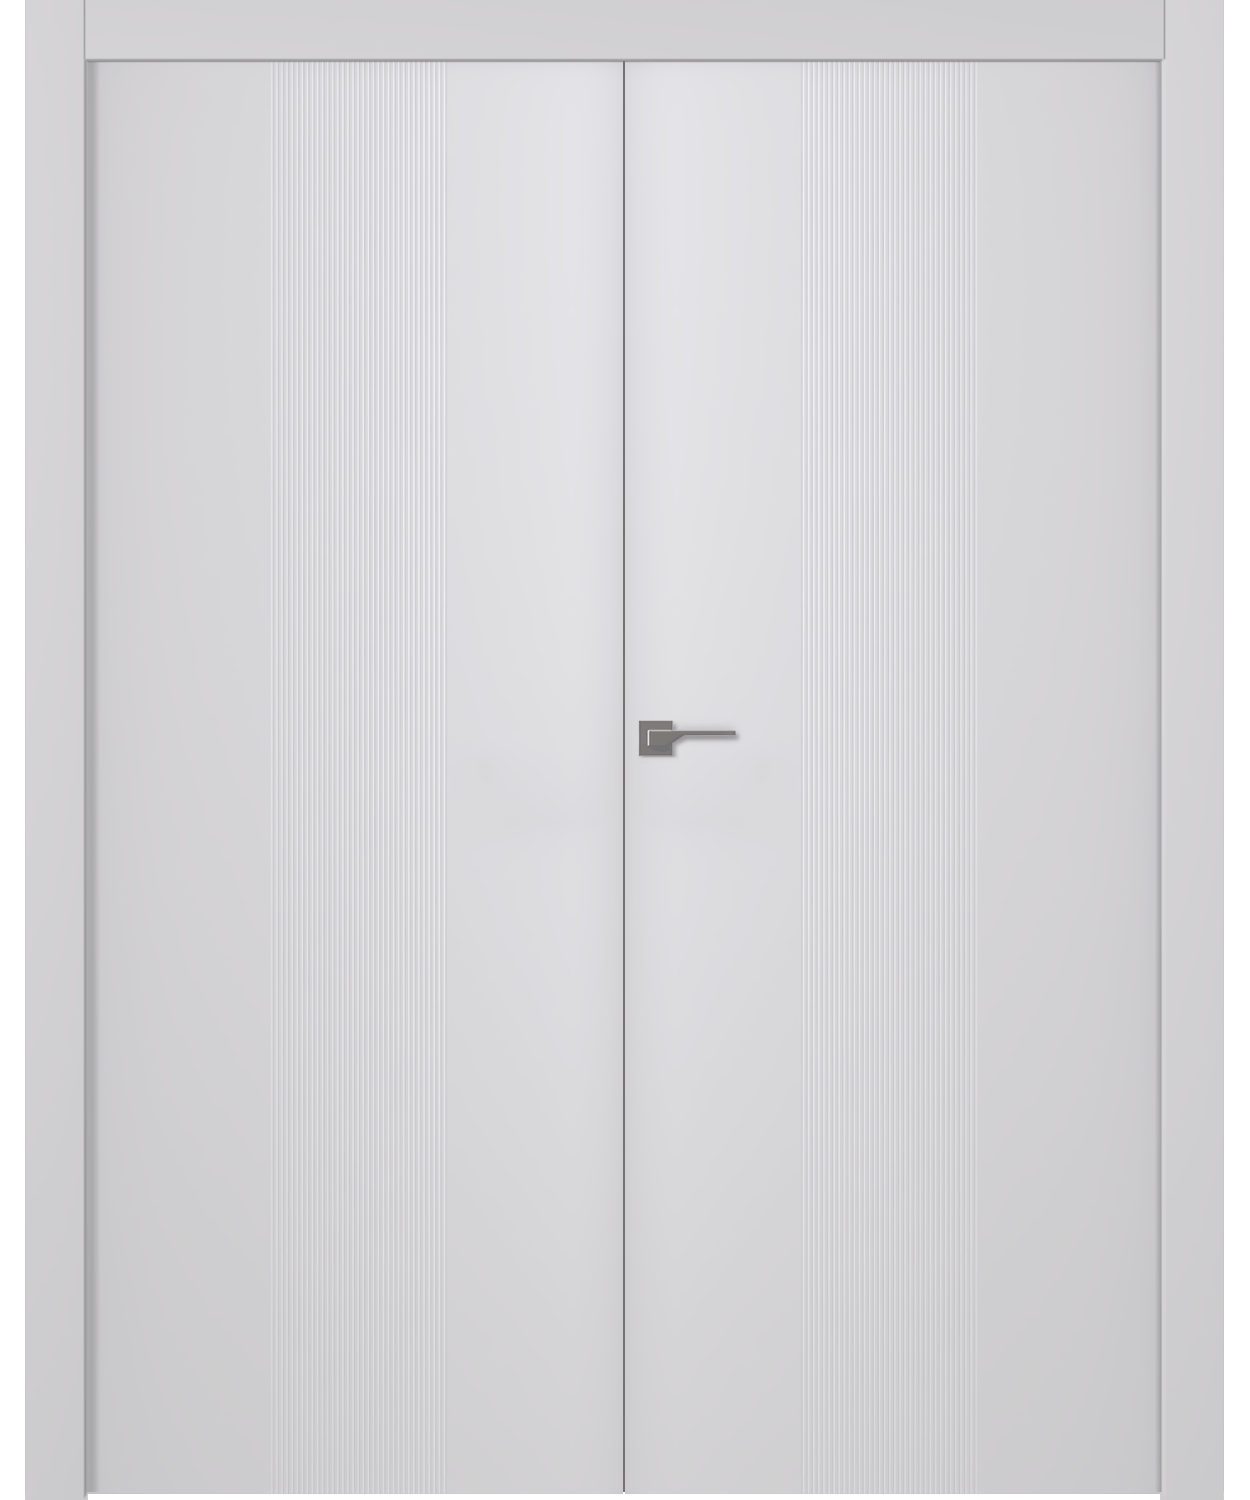 Дверное Полотно Пвдгщ "Ивент 1" Эмаль Белый 2,0-0,7 Smart Core Распашная двойная